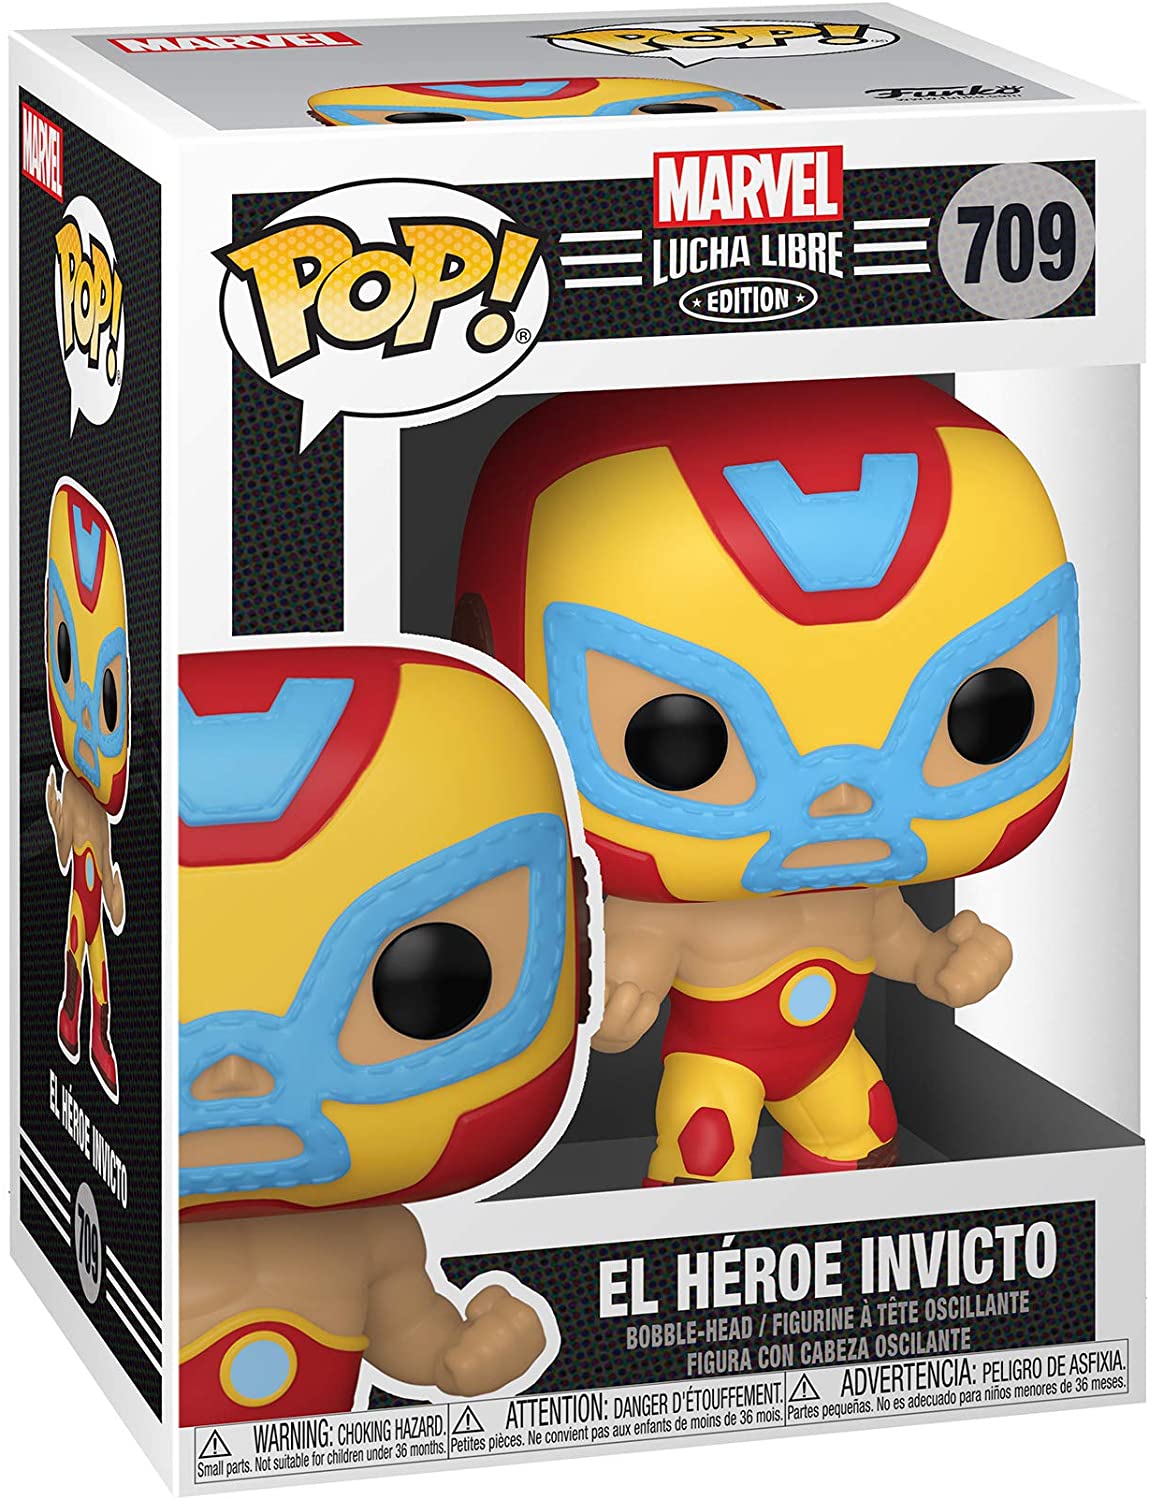 Funko Pop! Marvel: Funko Pop! - Lucha Libre Edition - El Heroe